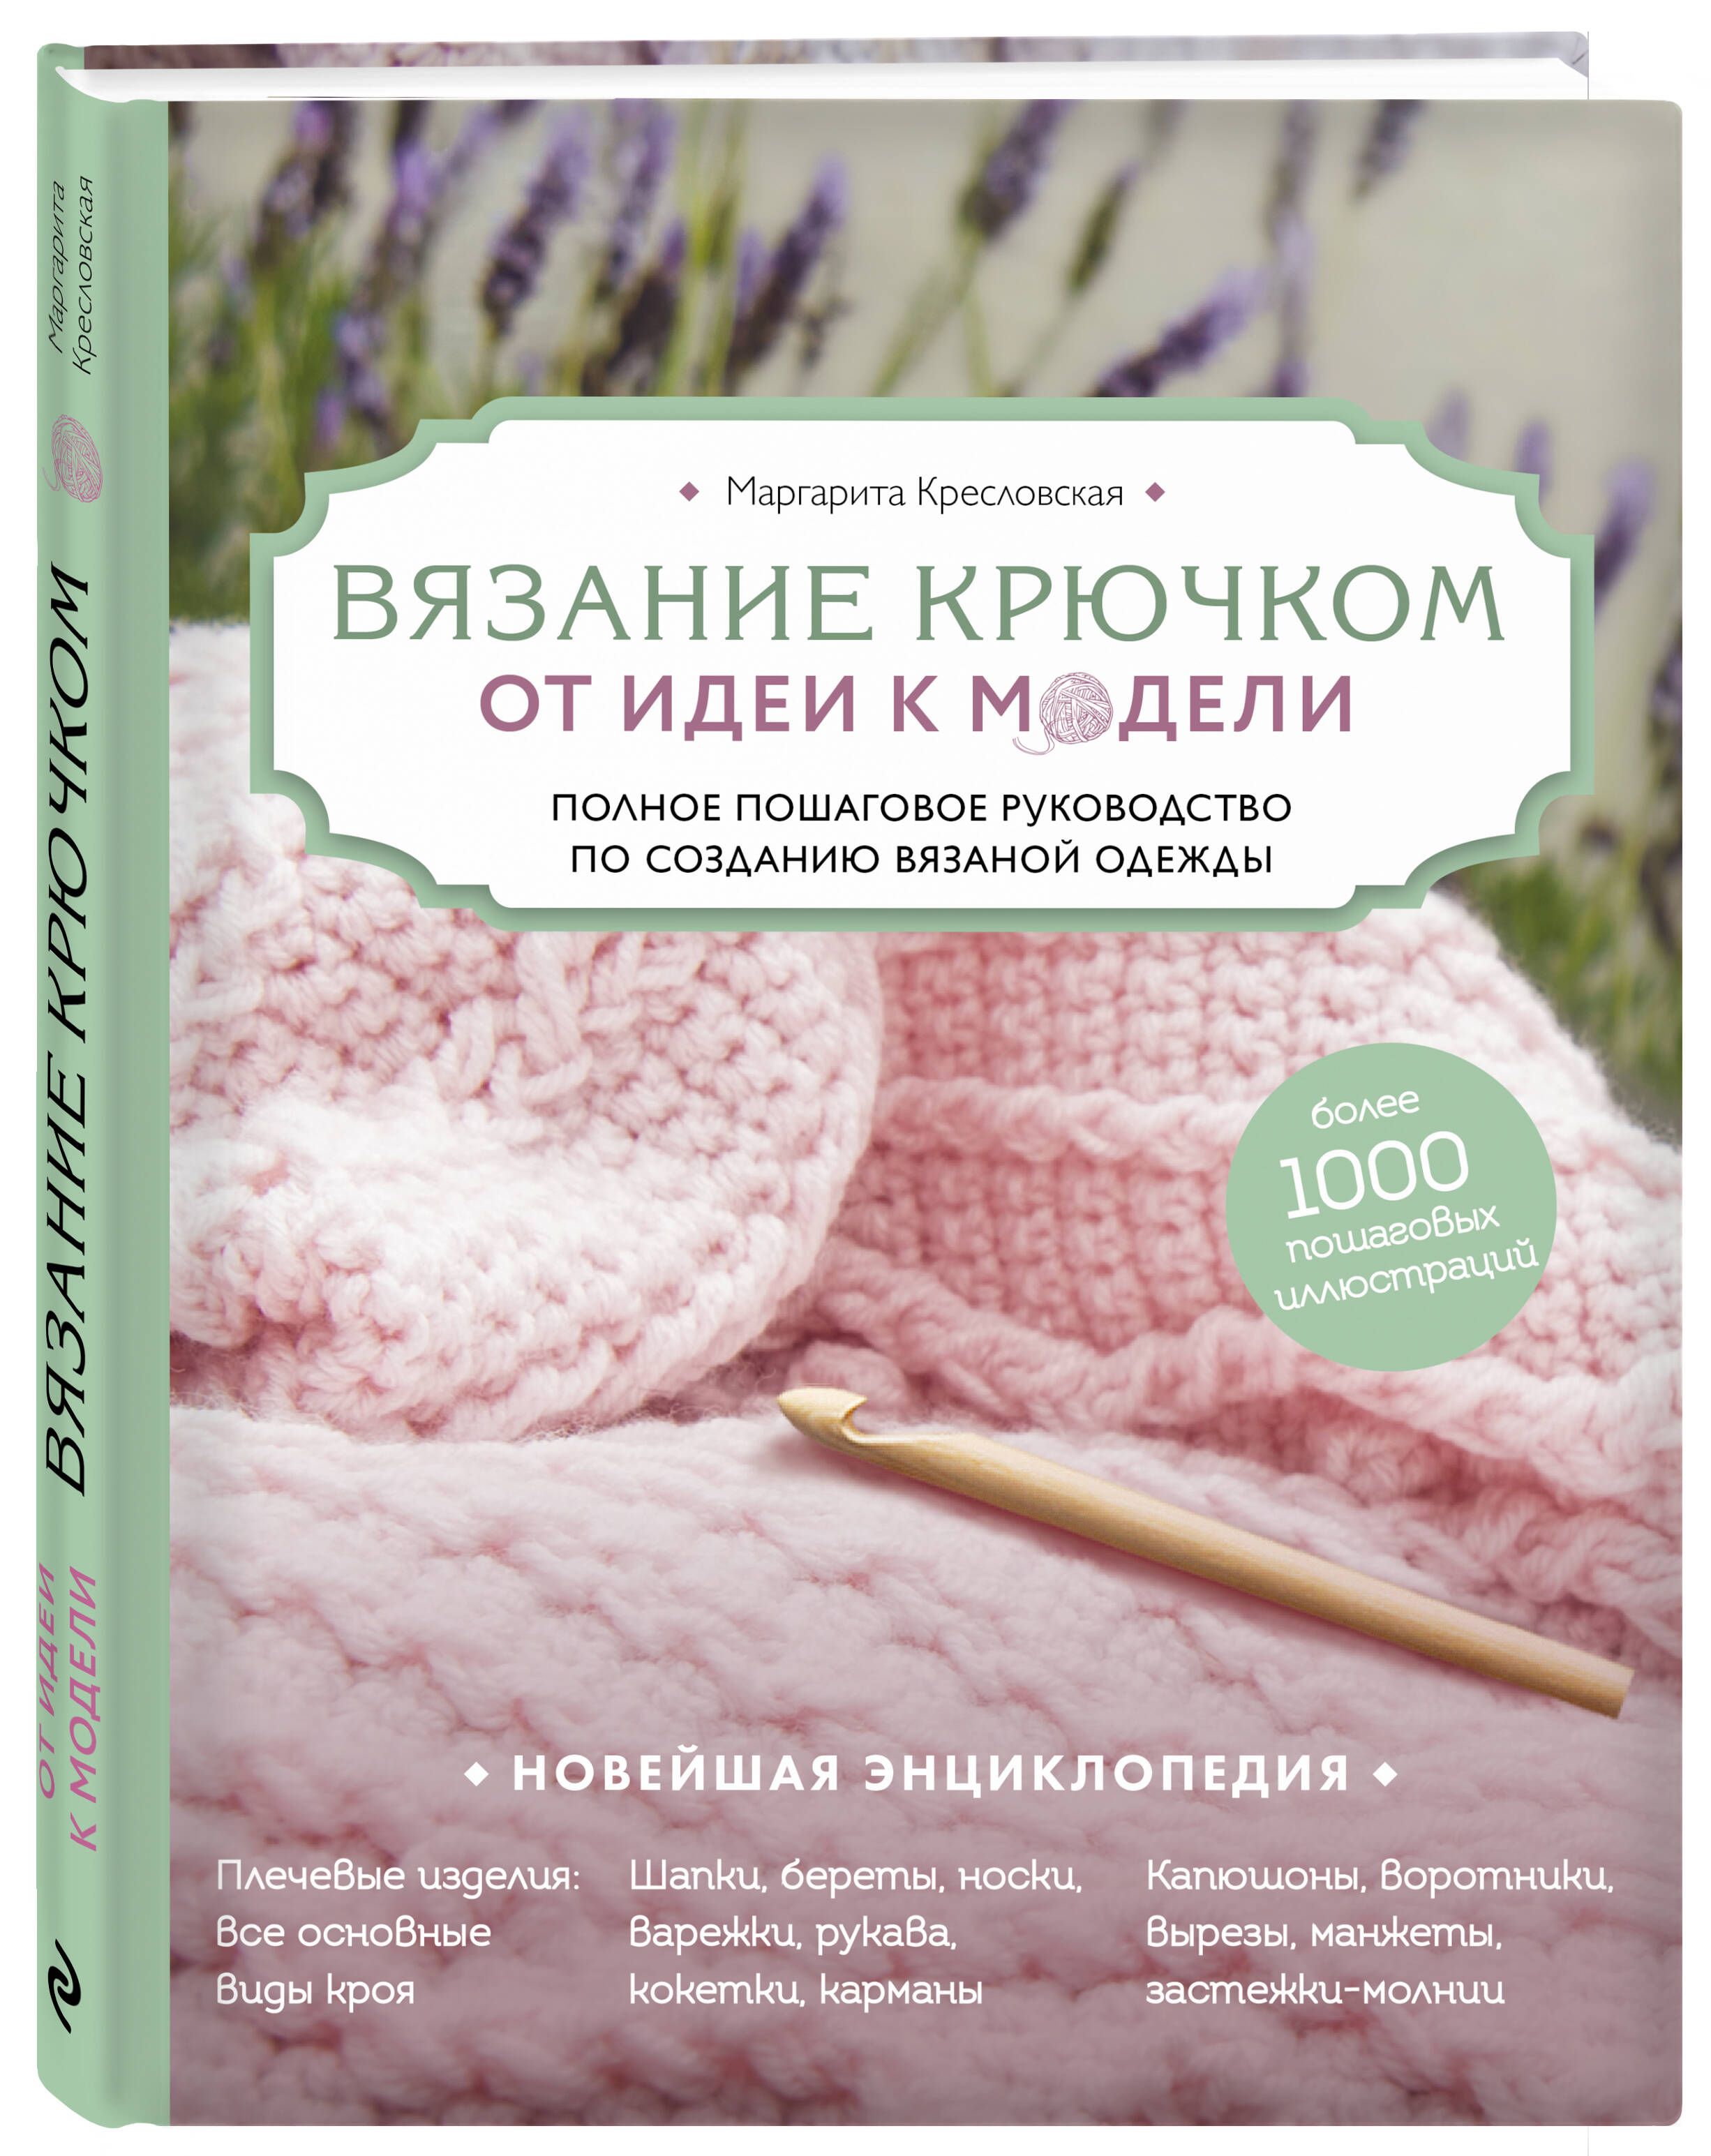 Книги Н.А. Тёткиной по вязаному пэчворку